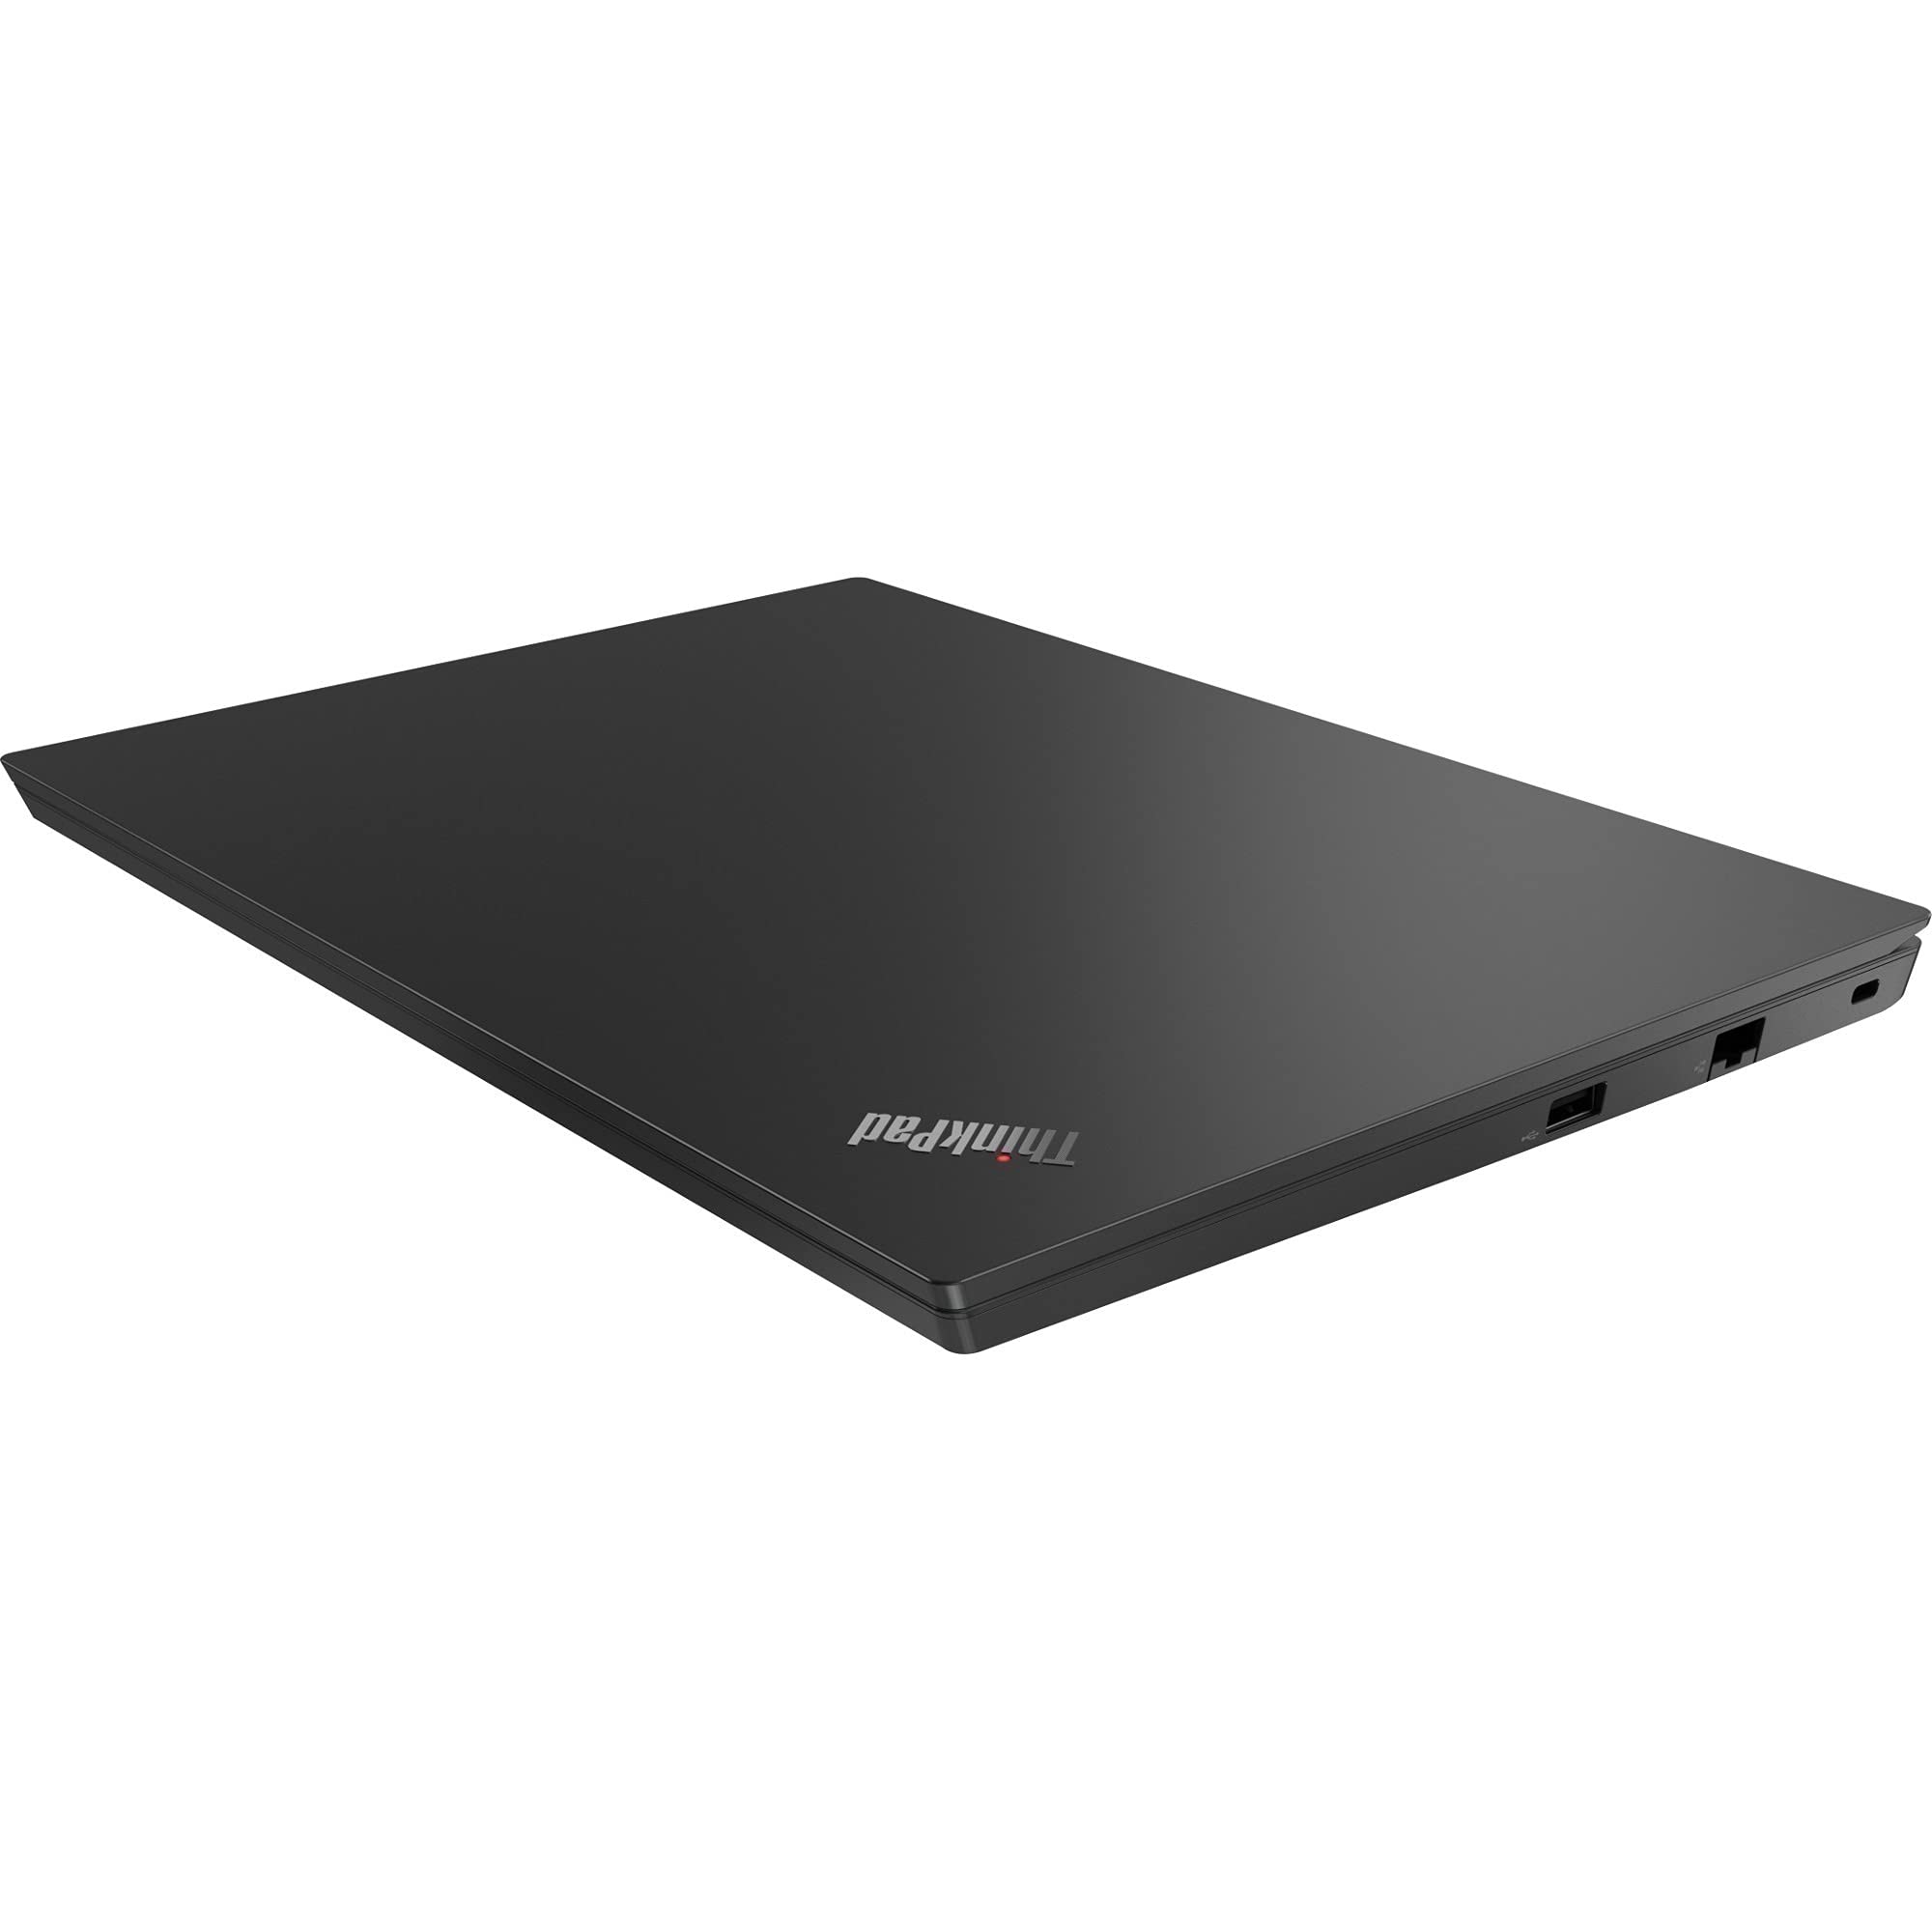 Lenovo ThinkPad E14 Gen 3 20Y70037US 14 Notebook - Full HD - 1920 x 1080 - AMD Ryzen 5 5500U Hexa-core [6 Core] 2.10 GHz - 8 GB Total RAM - 256 GB SSD - Black